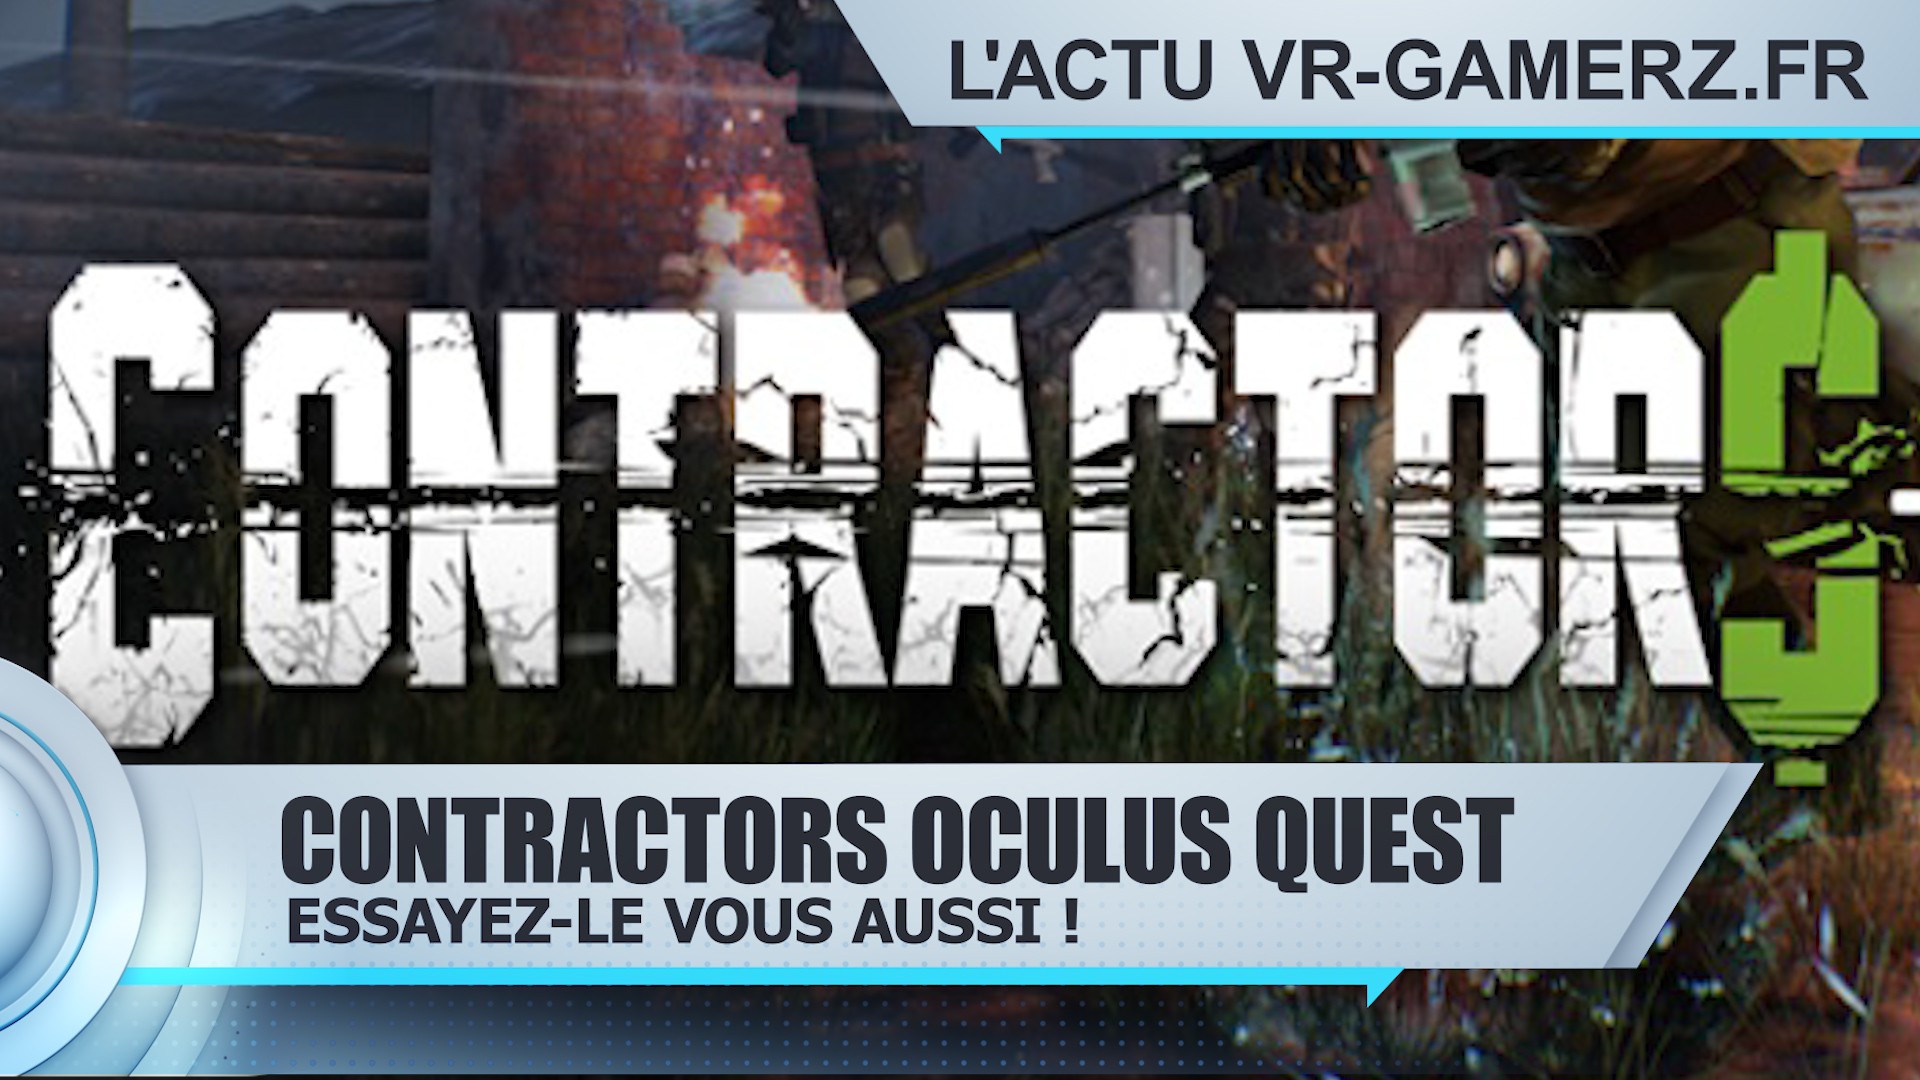 Contractors Oculus quest : Essayez-le vous aussi !